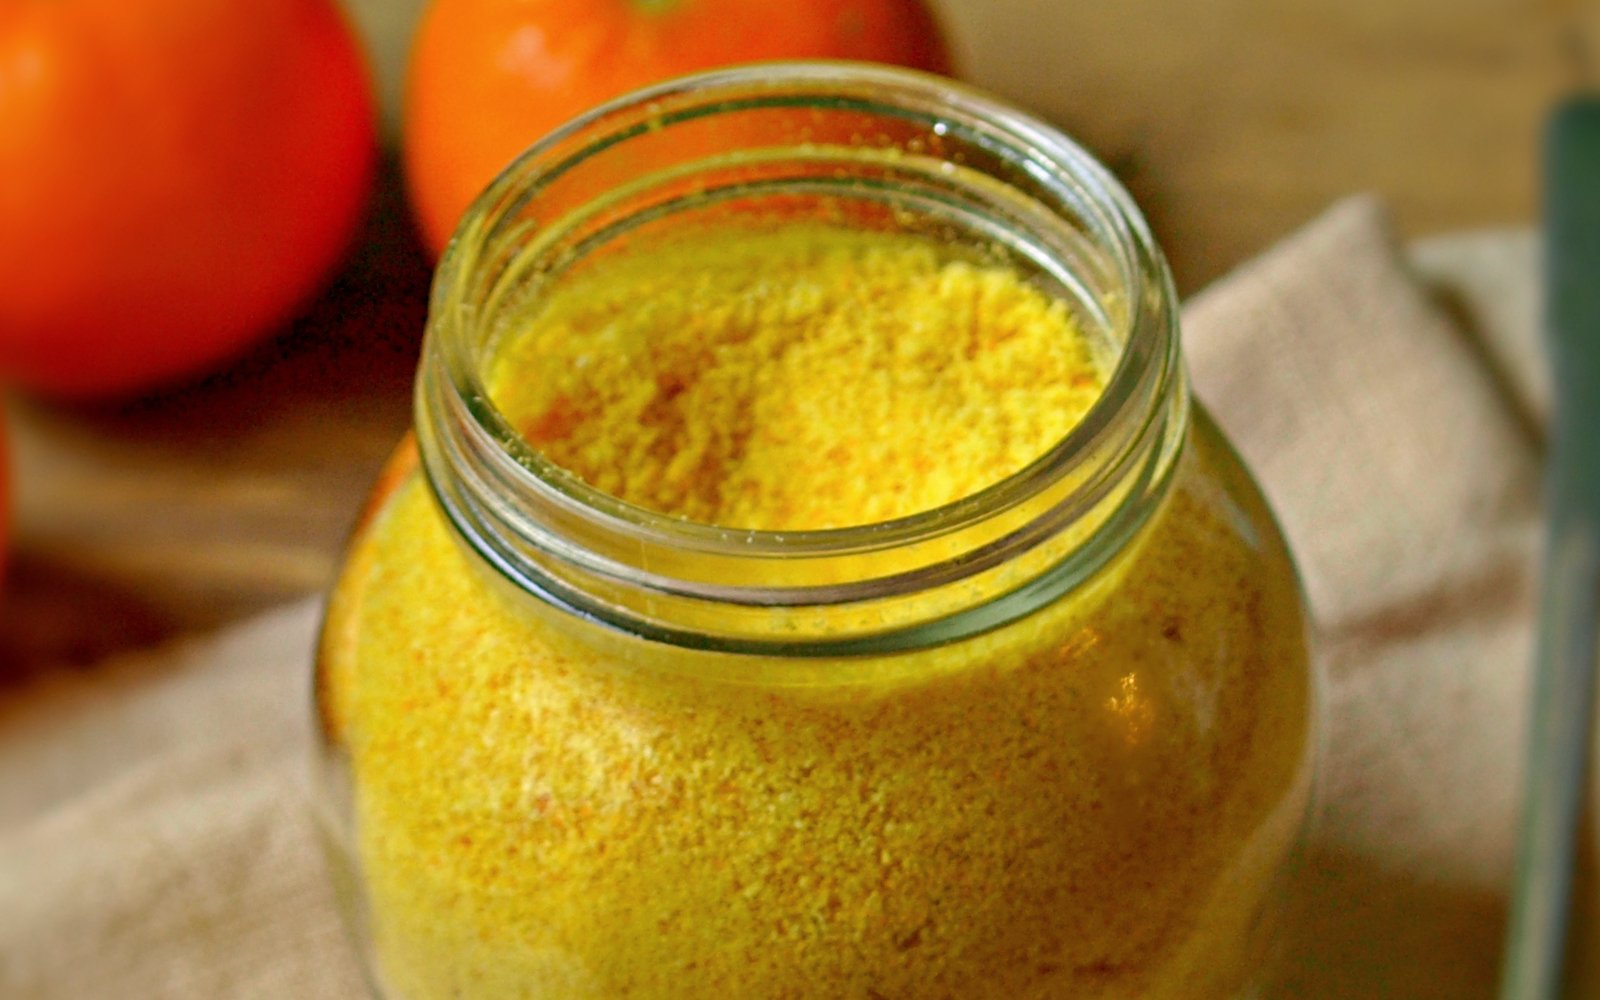 How to Make Vitamin C Powder at Home